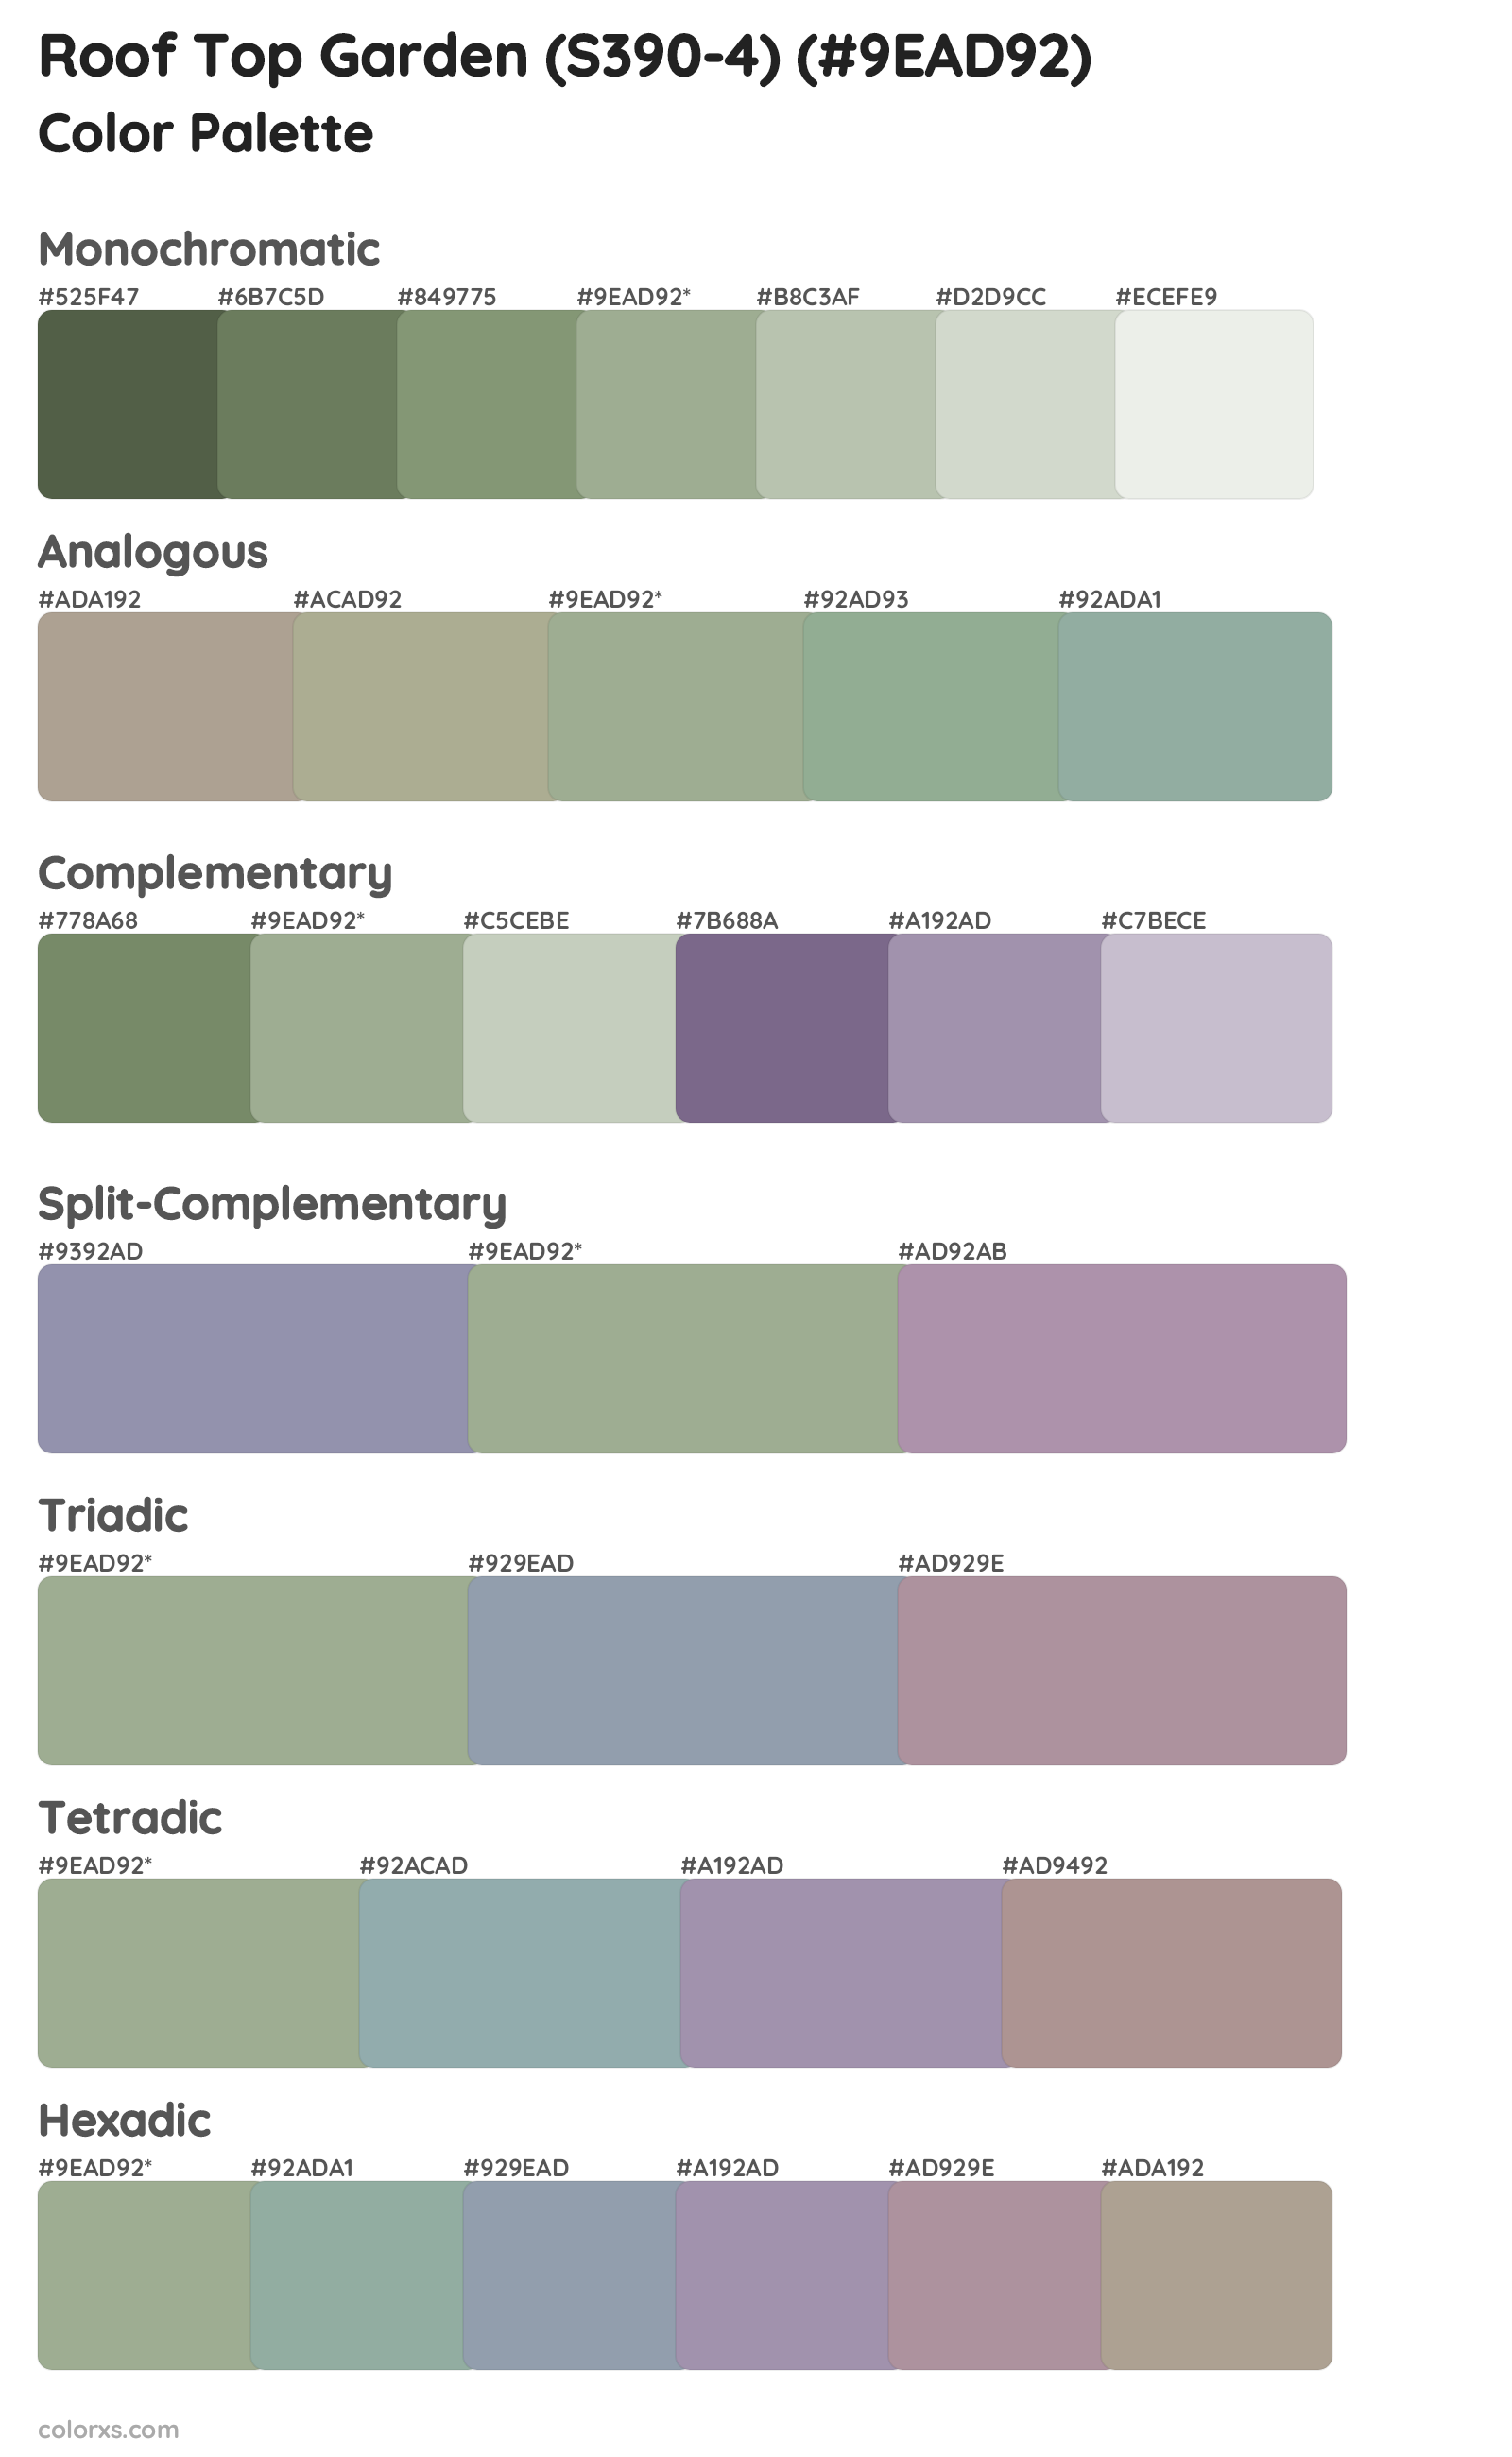 Roof Top Garden (S390-4) Color Scheme Palettes